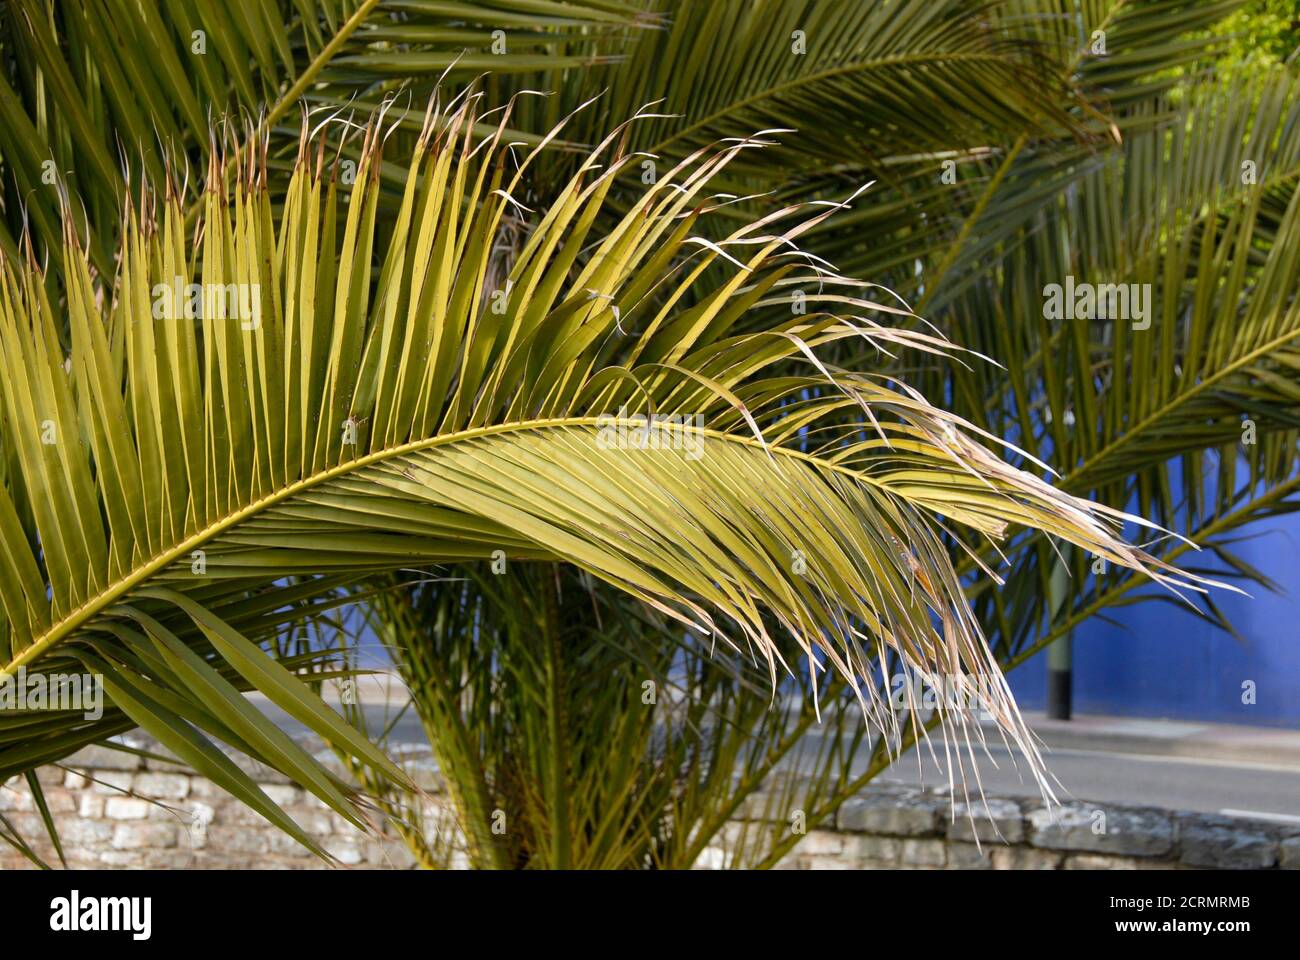 Palmenblätter, die den Eindruck der Wärme im Ferienort Torquay, Devon, England geben - tthe English Riviera Stockfoto